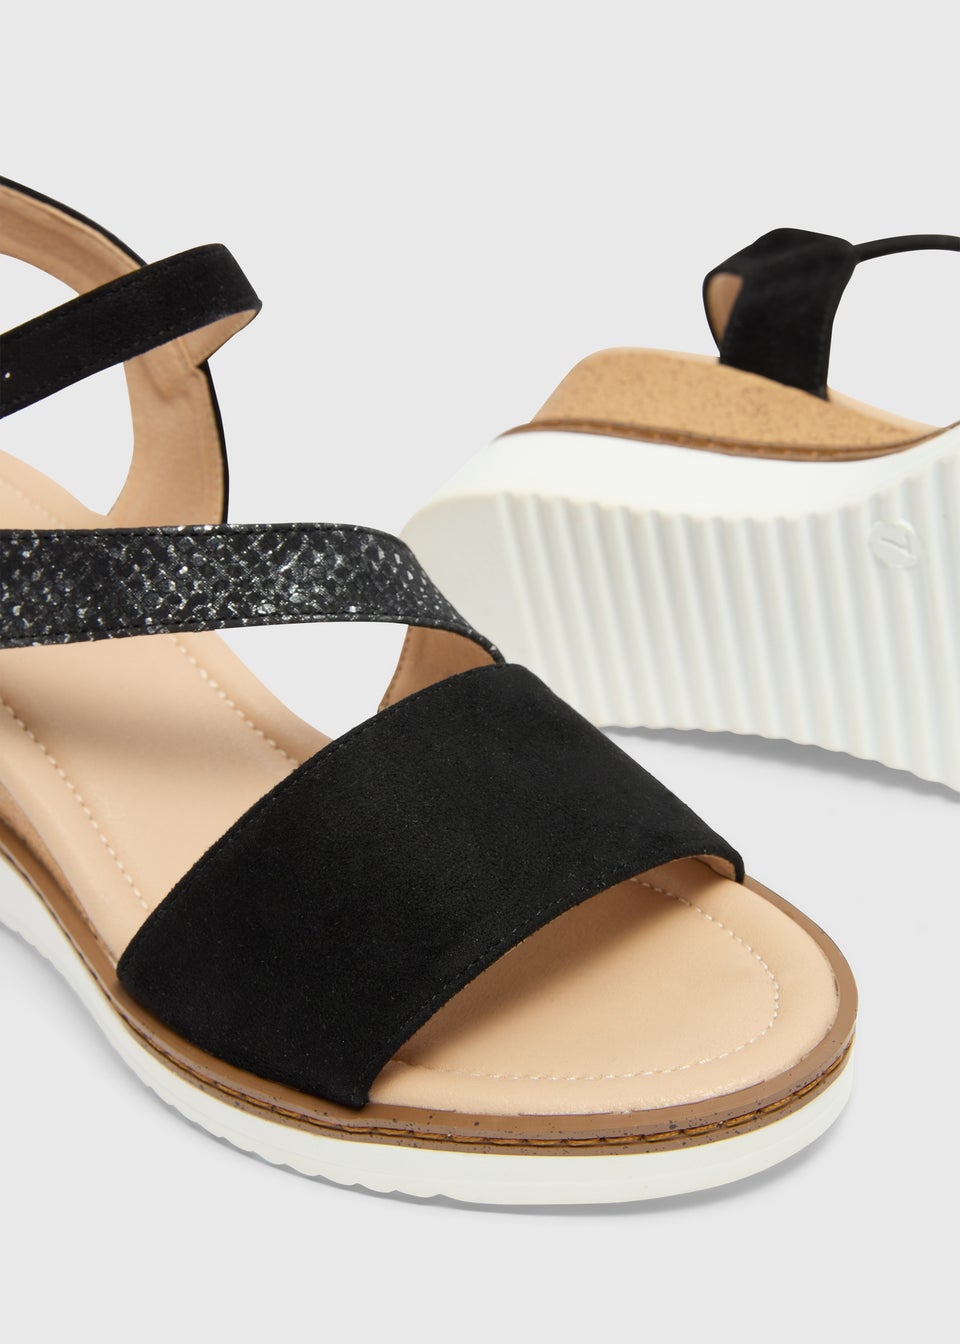 Soleflex Black White Sole Wedge Sandals